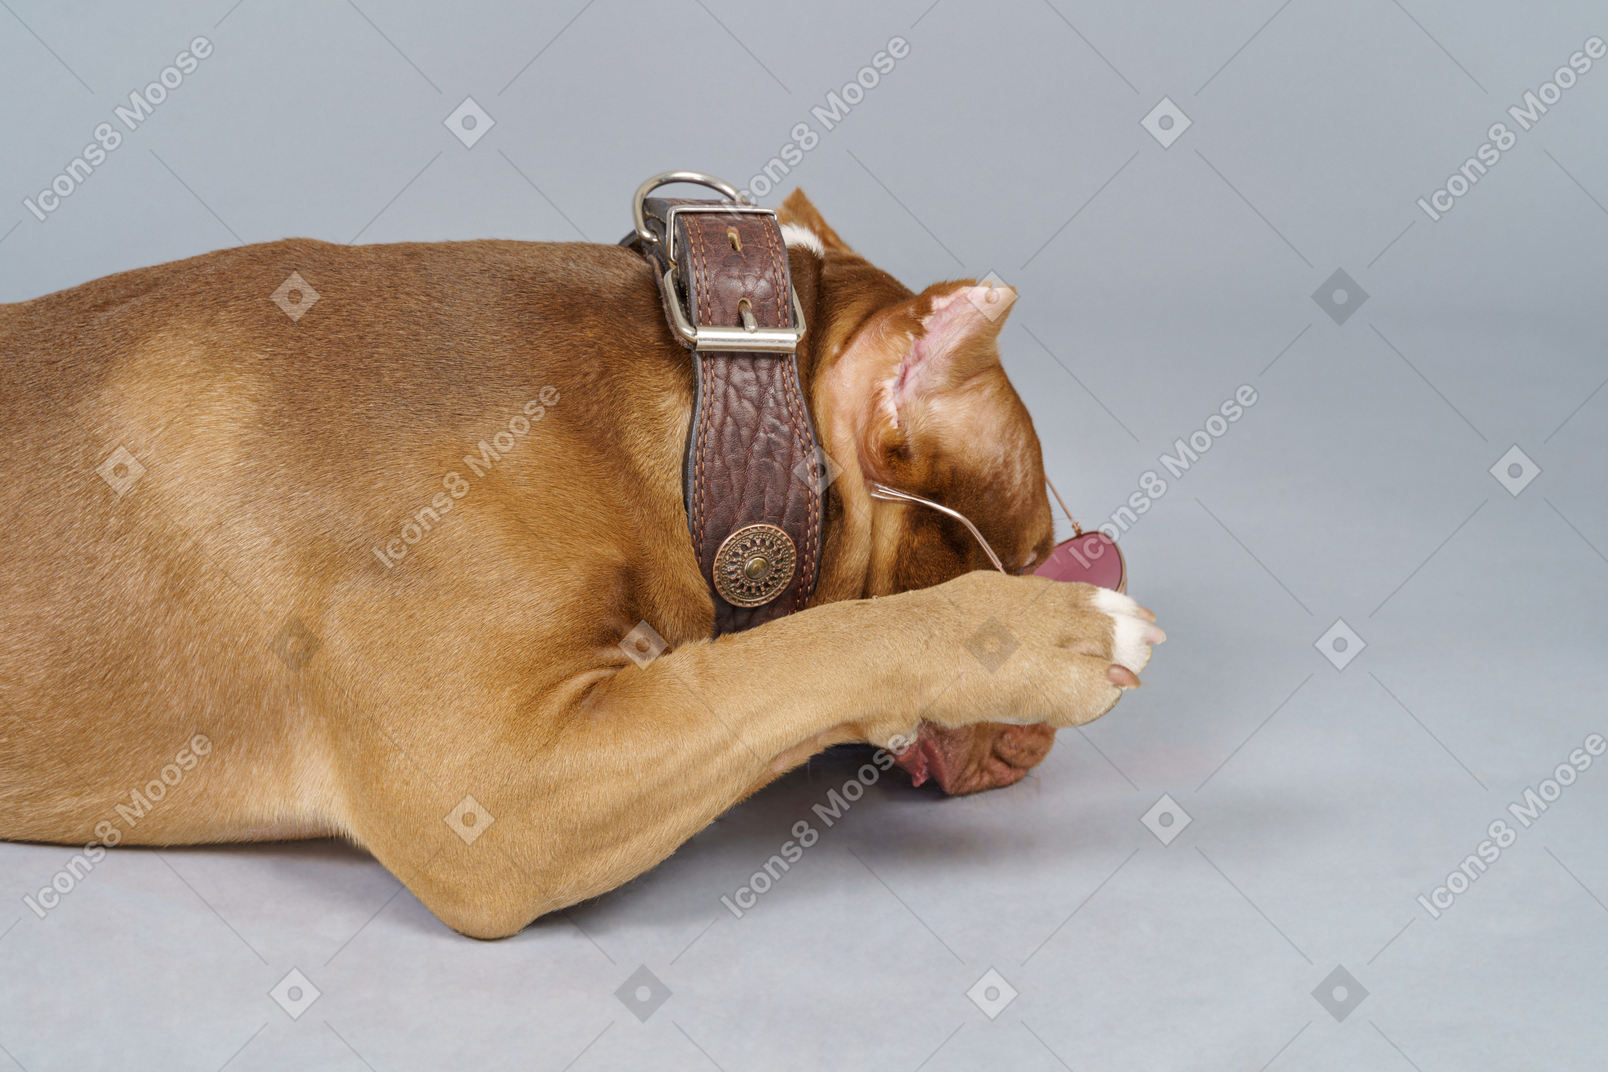 Vue latérale d'un bulldog brun portant un collier de chien et se cachant le museau